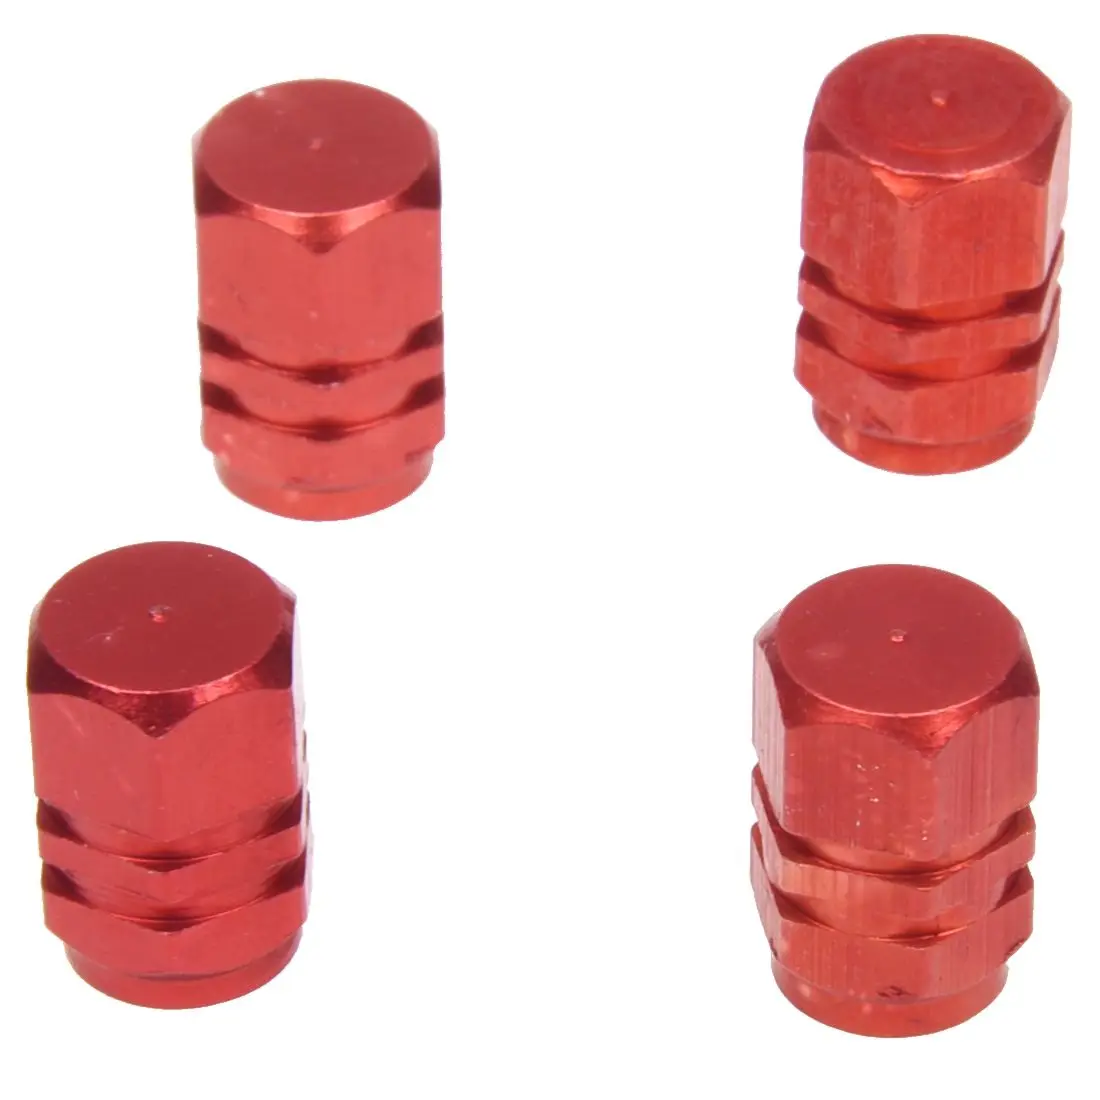 Красные колпачки воздушного клапана для шин подходят для всех клапанов Schrader(упаковка из 4